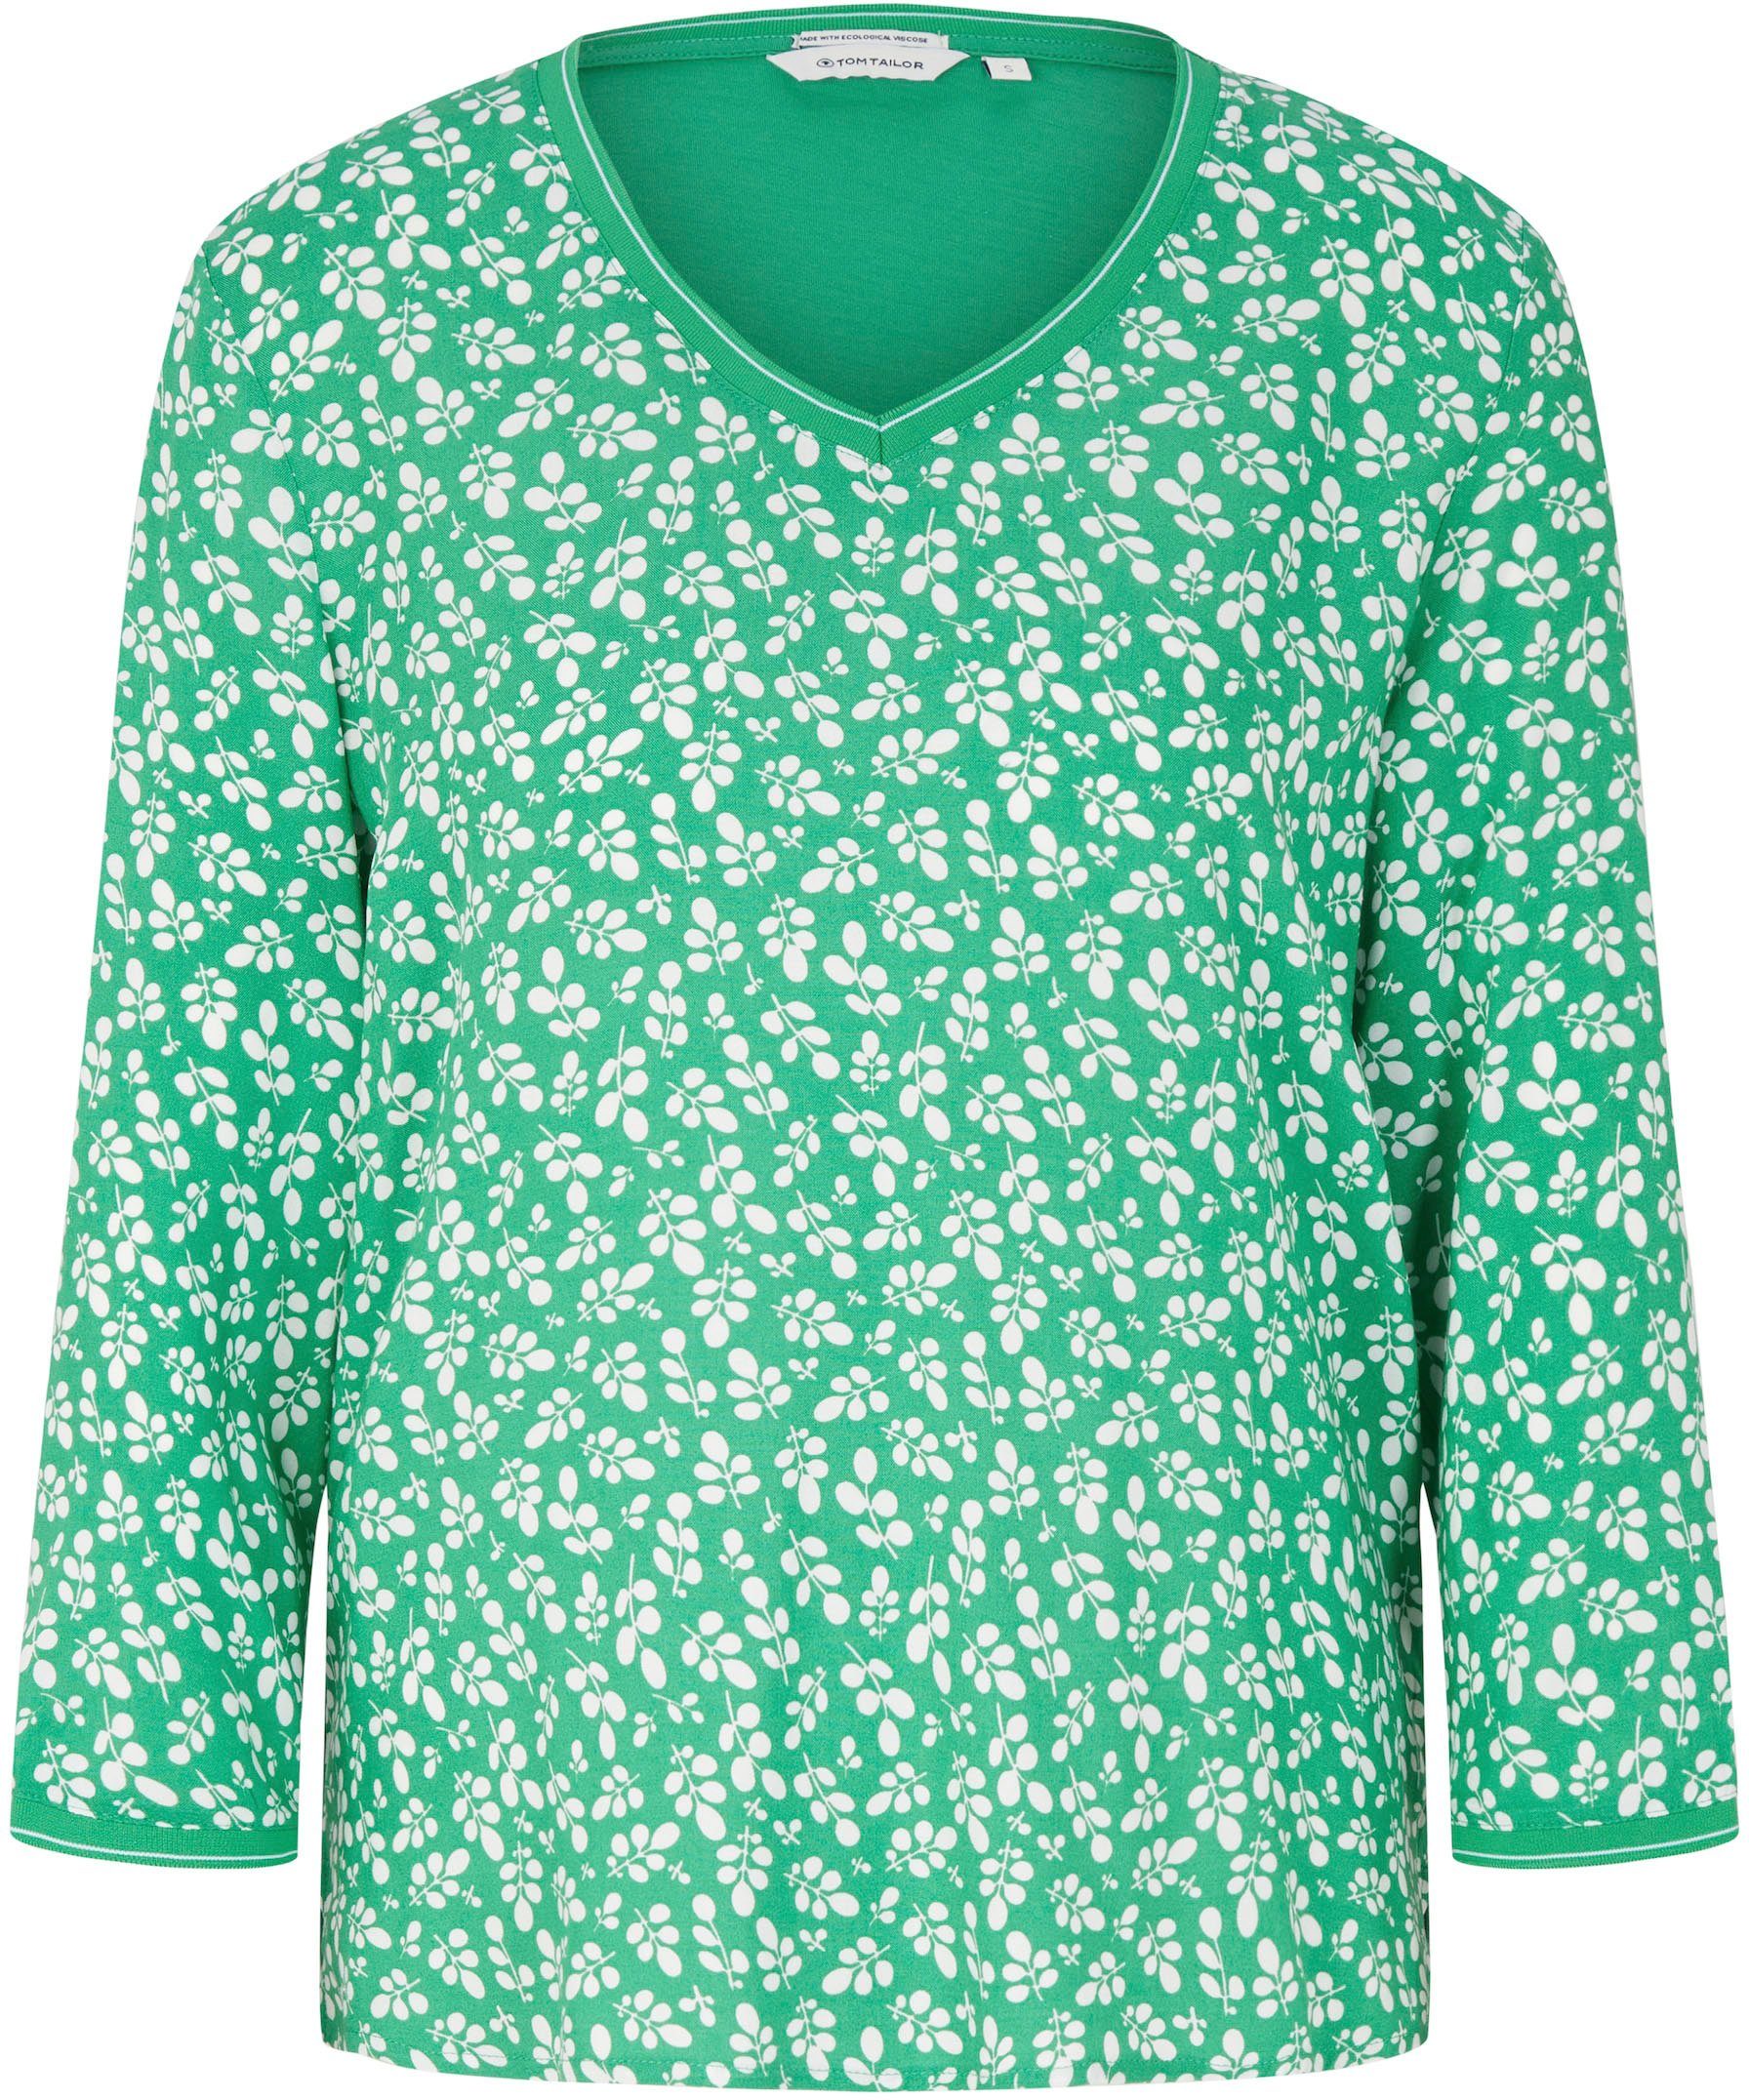 TOM TAILOR T-Shirt green Bedruckung flor mit